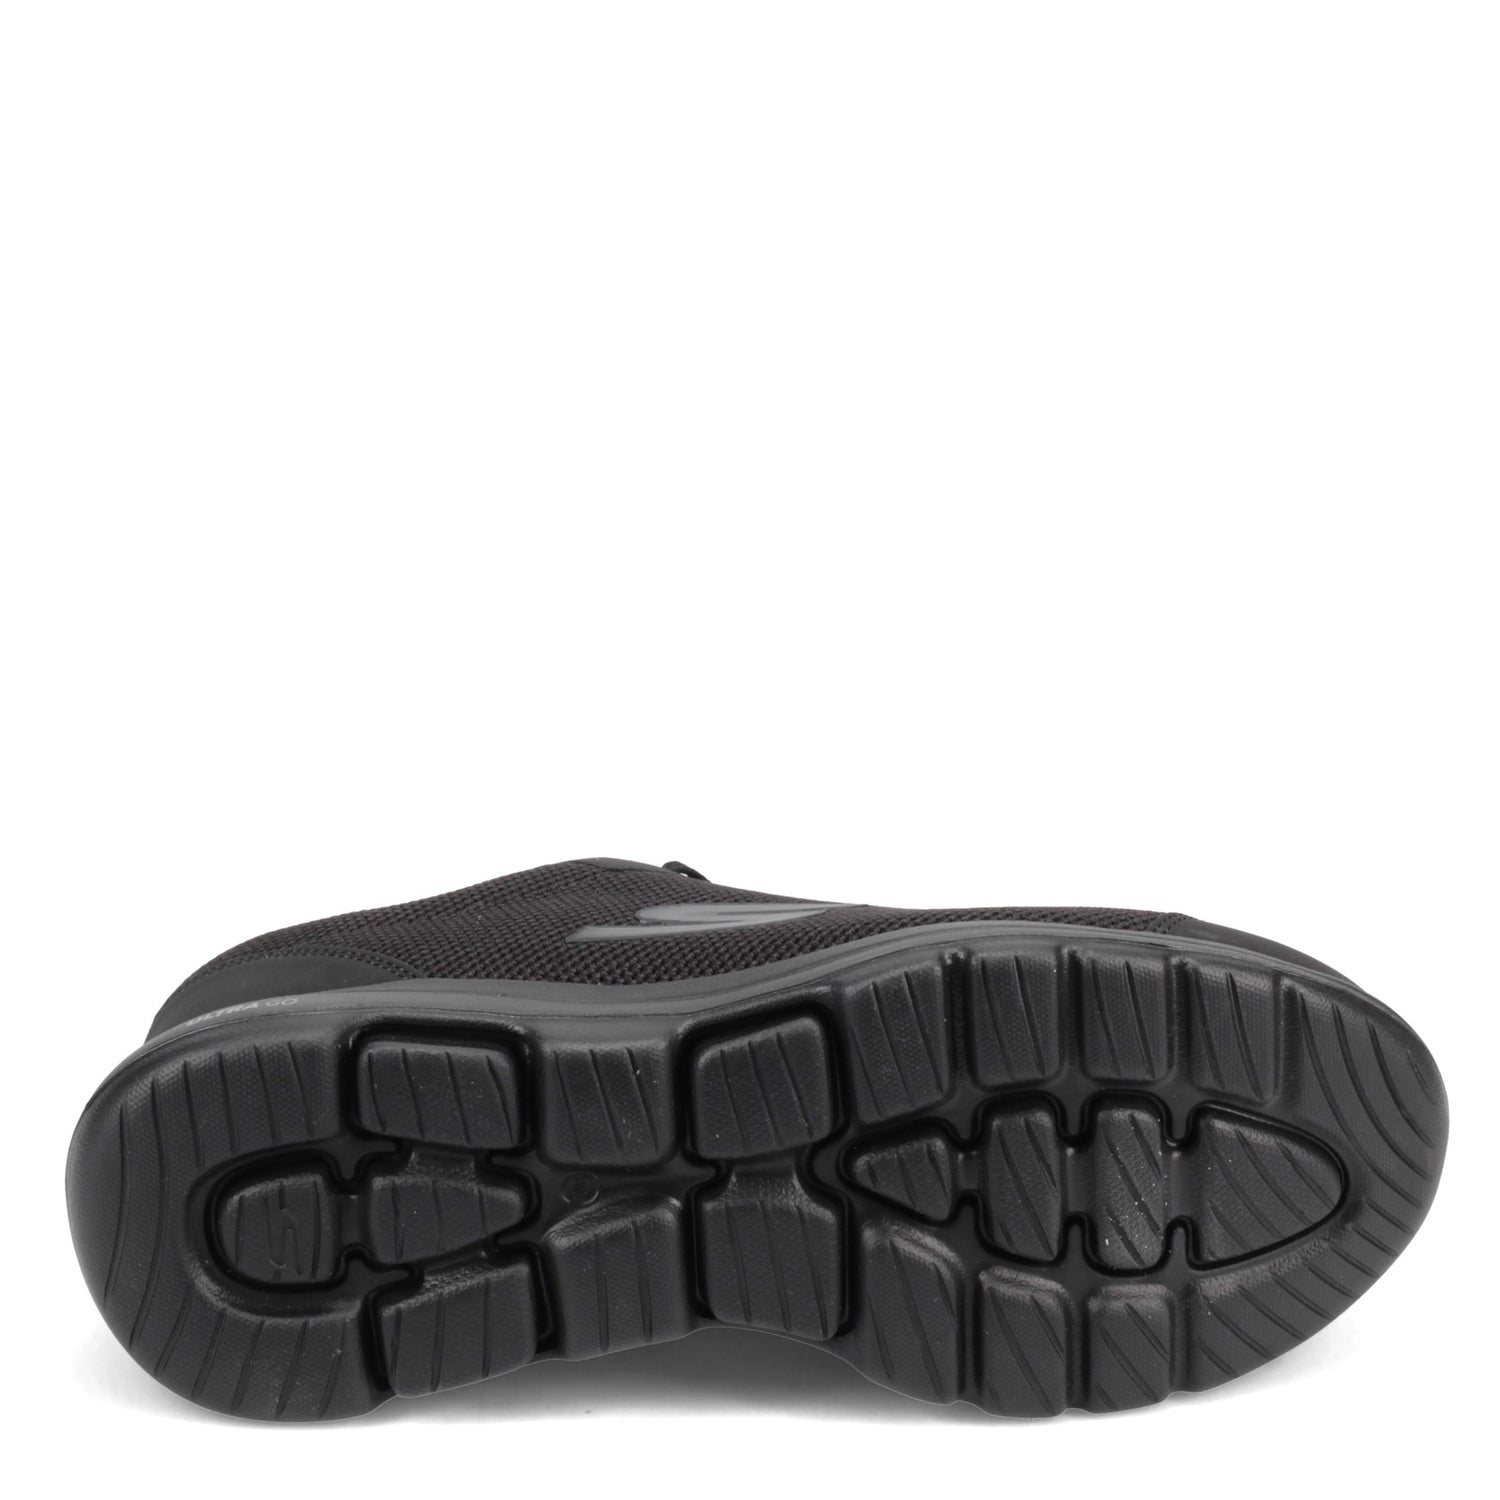 Skechers Men's GOwalk 5 Demitasse Shoes - Black 55519BBK